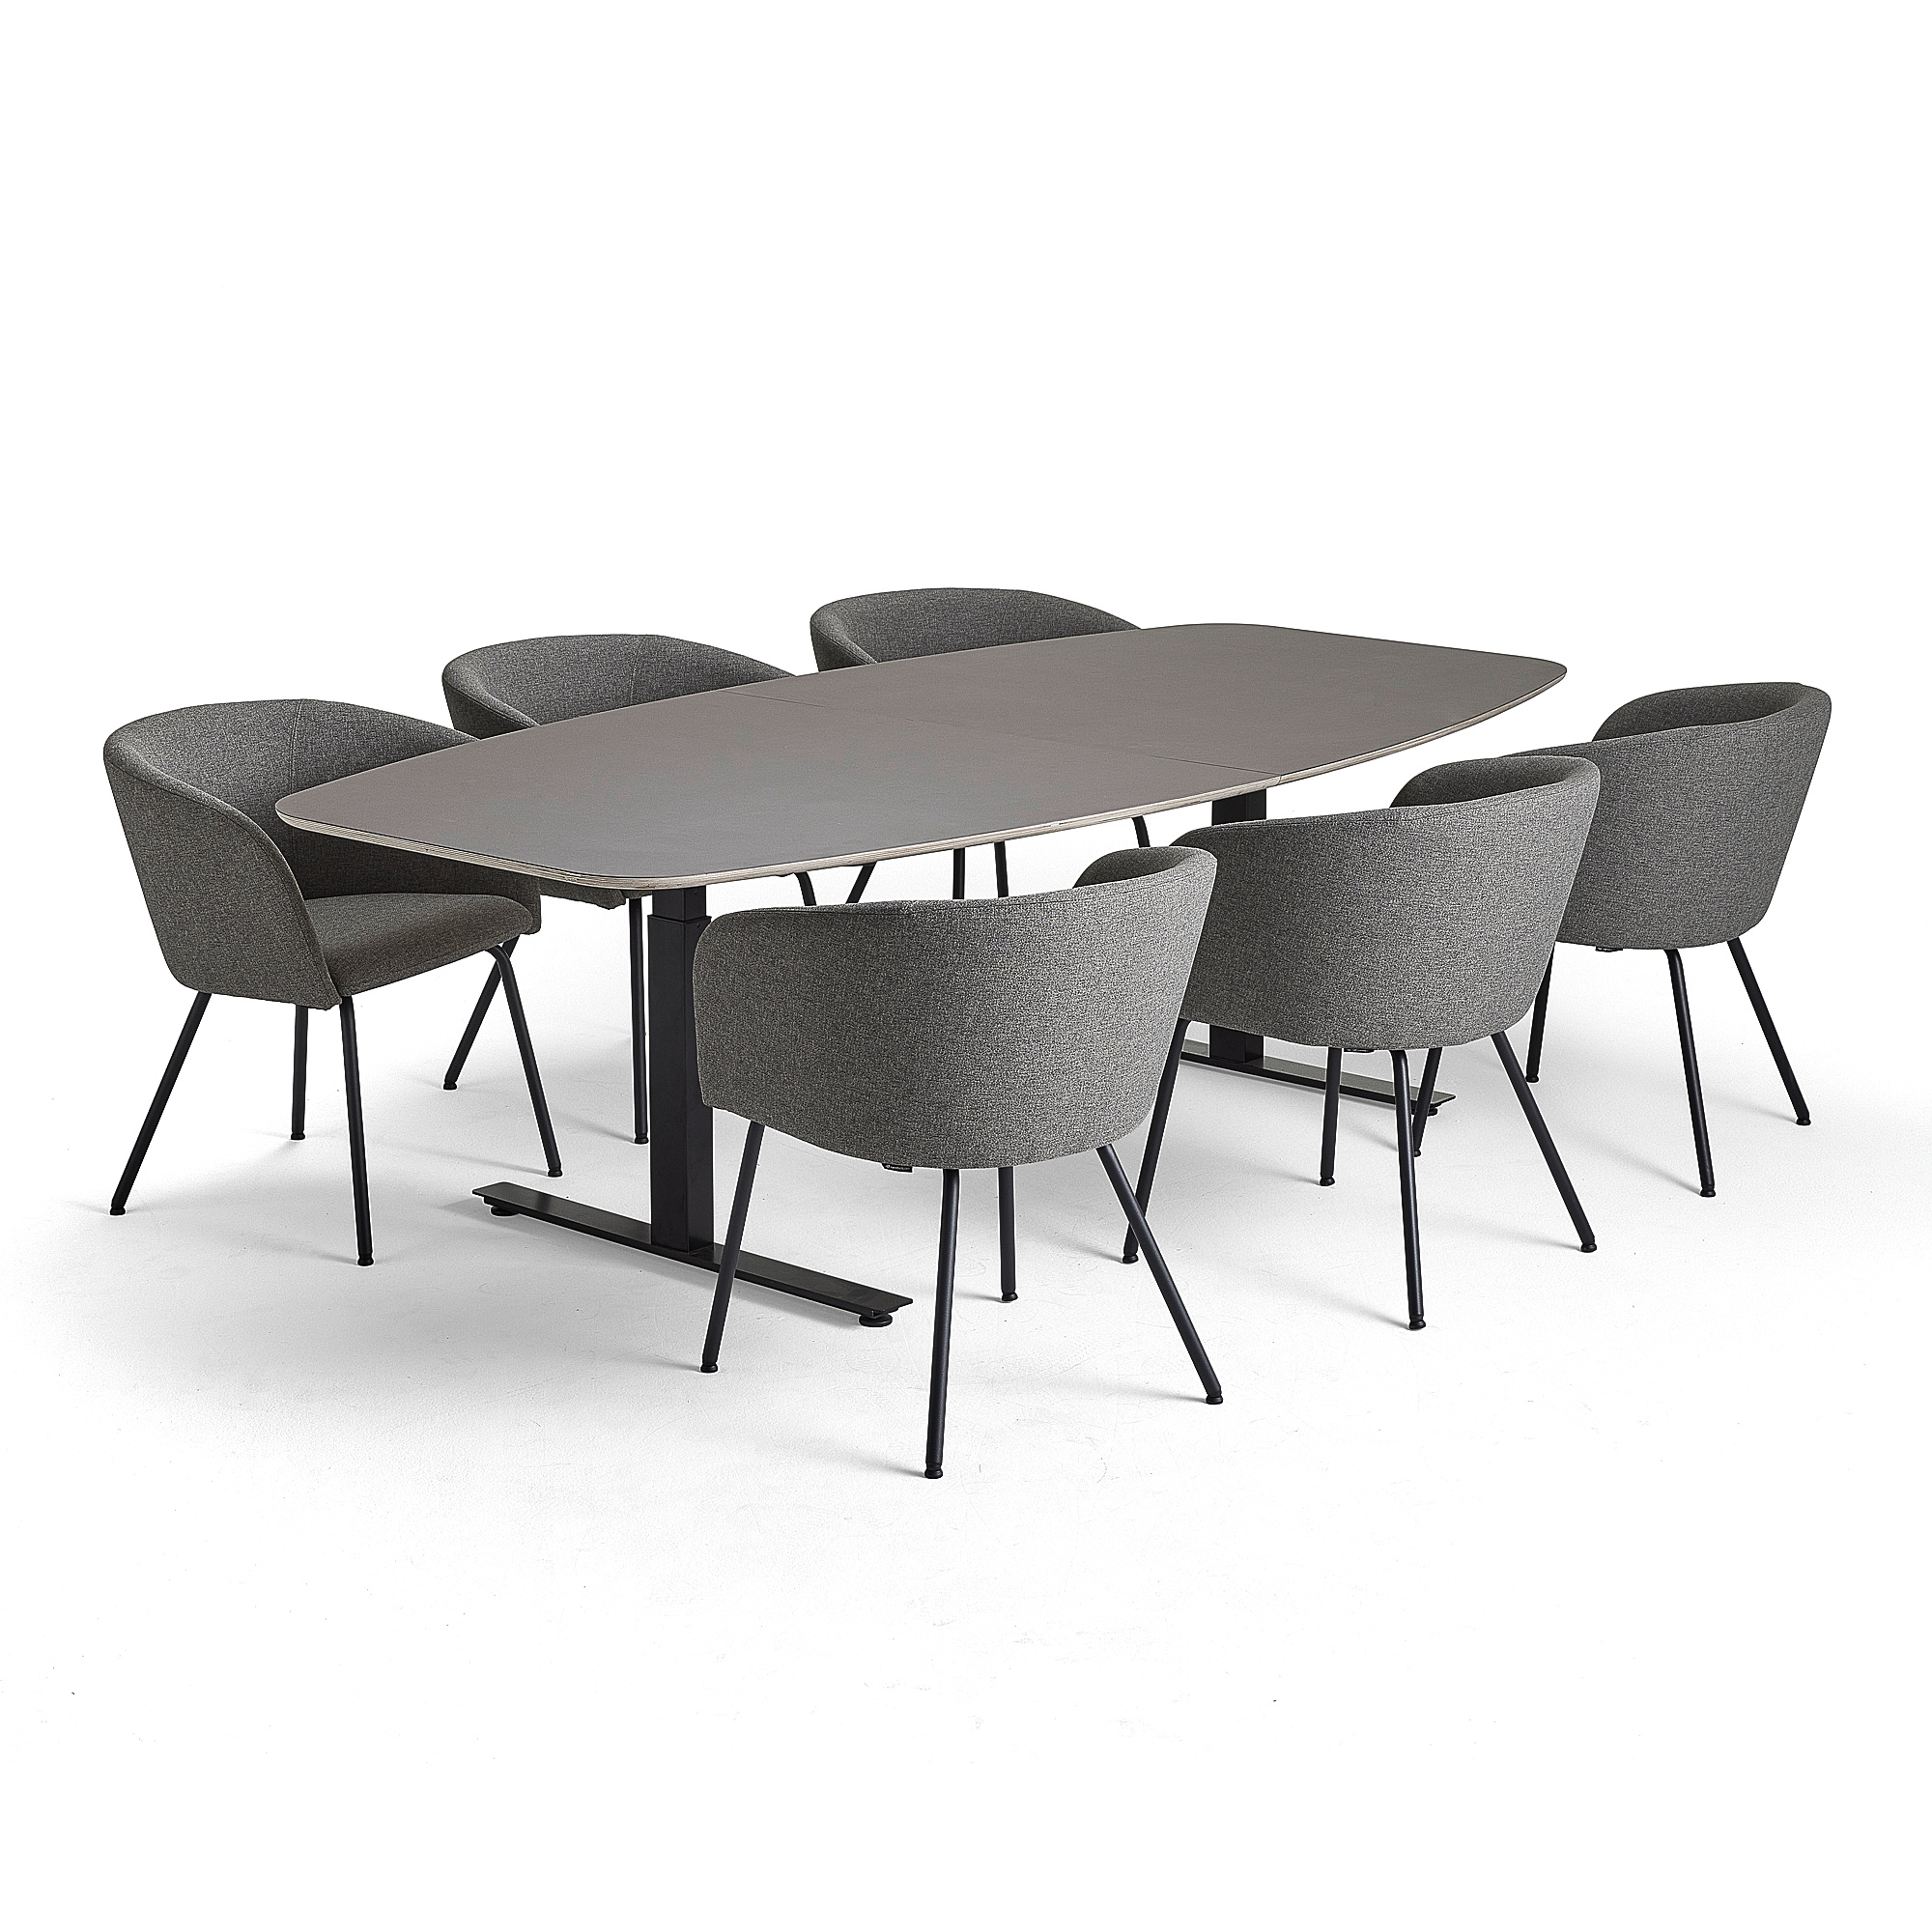 Rokovací nábytok AUDREY + HAPPY, 1 šedohnedý stôl + 6 stoličiek, šedobéžová